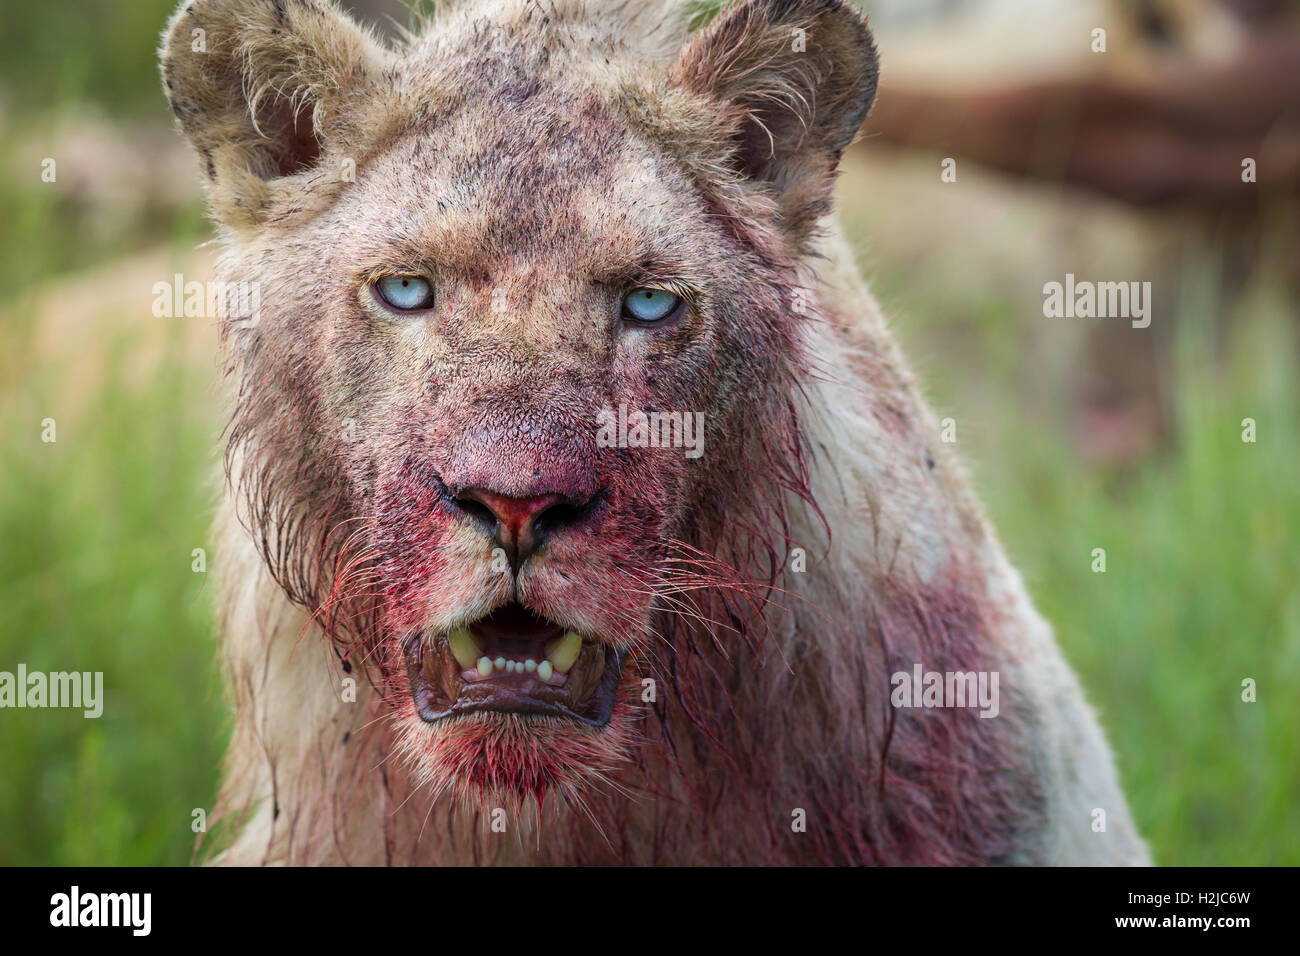 Young White Lion, alimentación, usted mira fijamente con llamativos ojos azules y un escalofriante, manchada de sangre cara: la imagen de un carnívoro Foto de stock